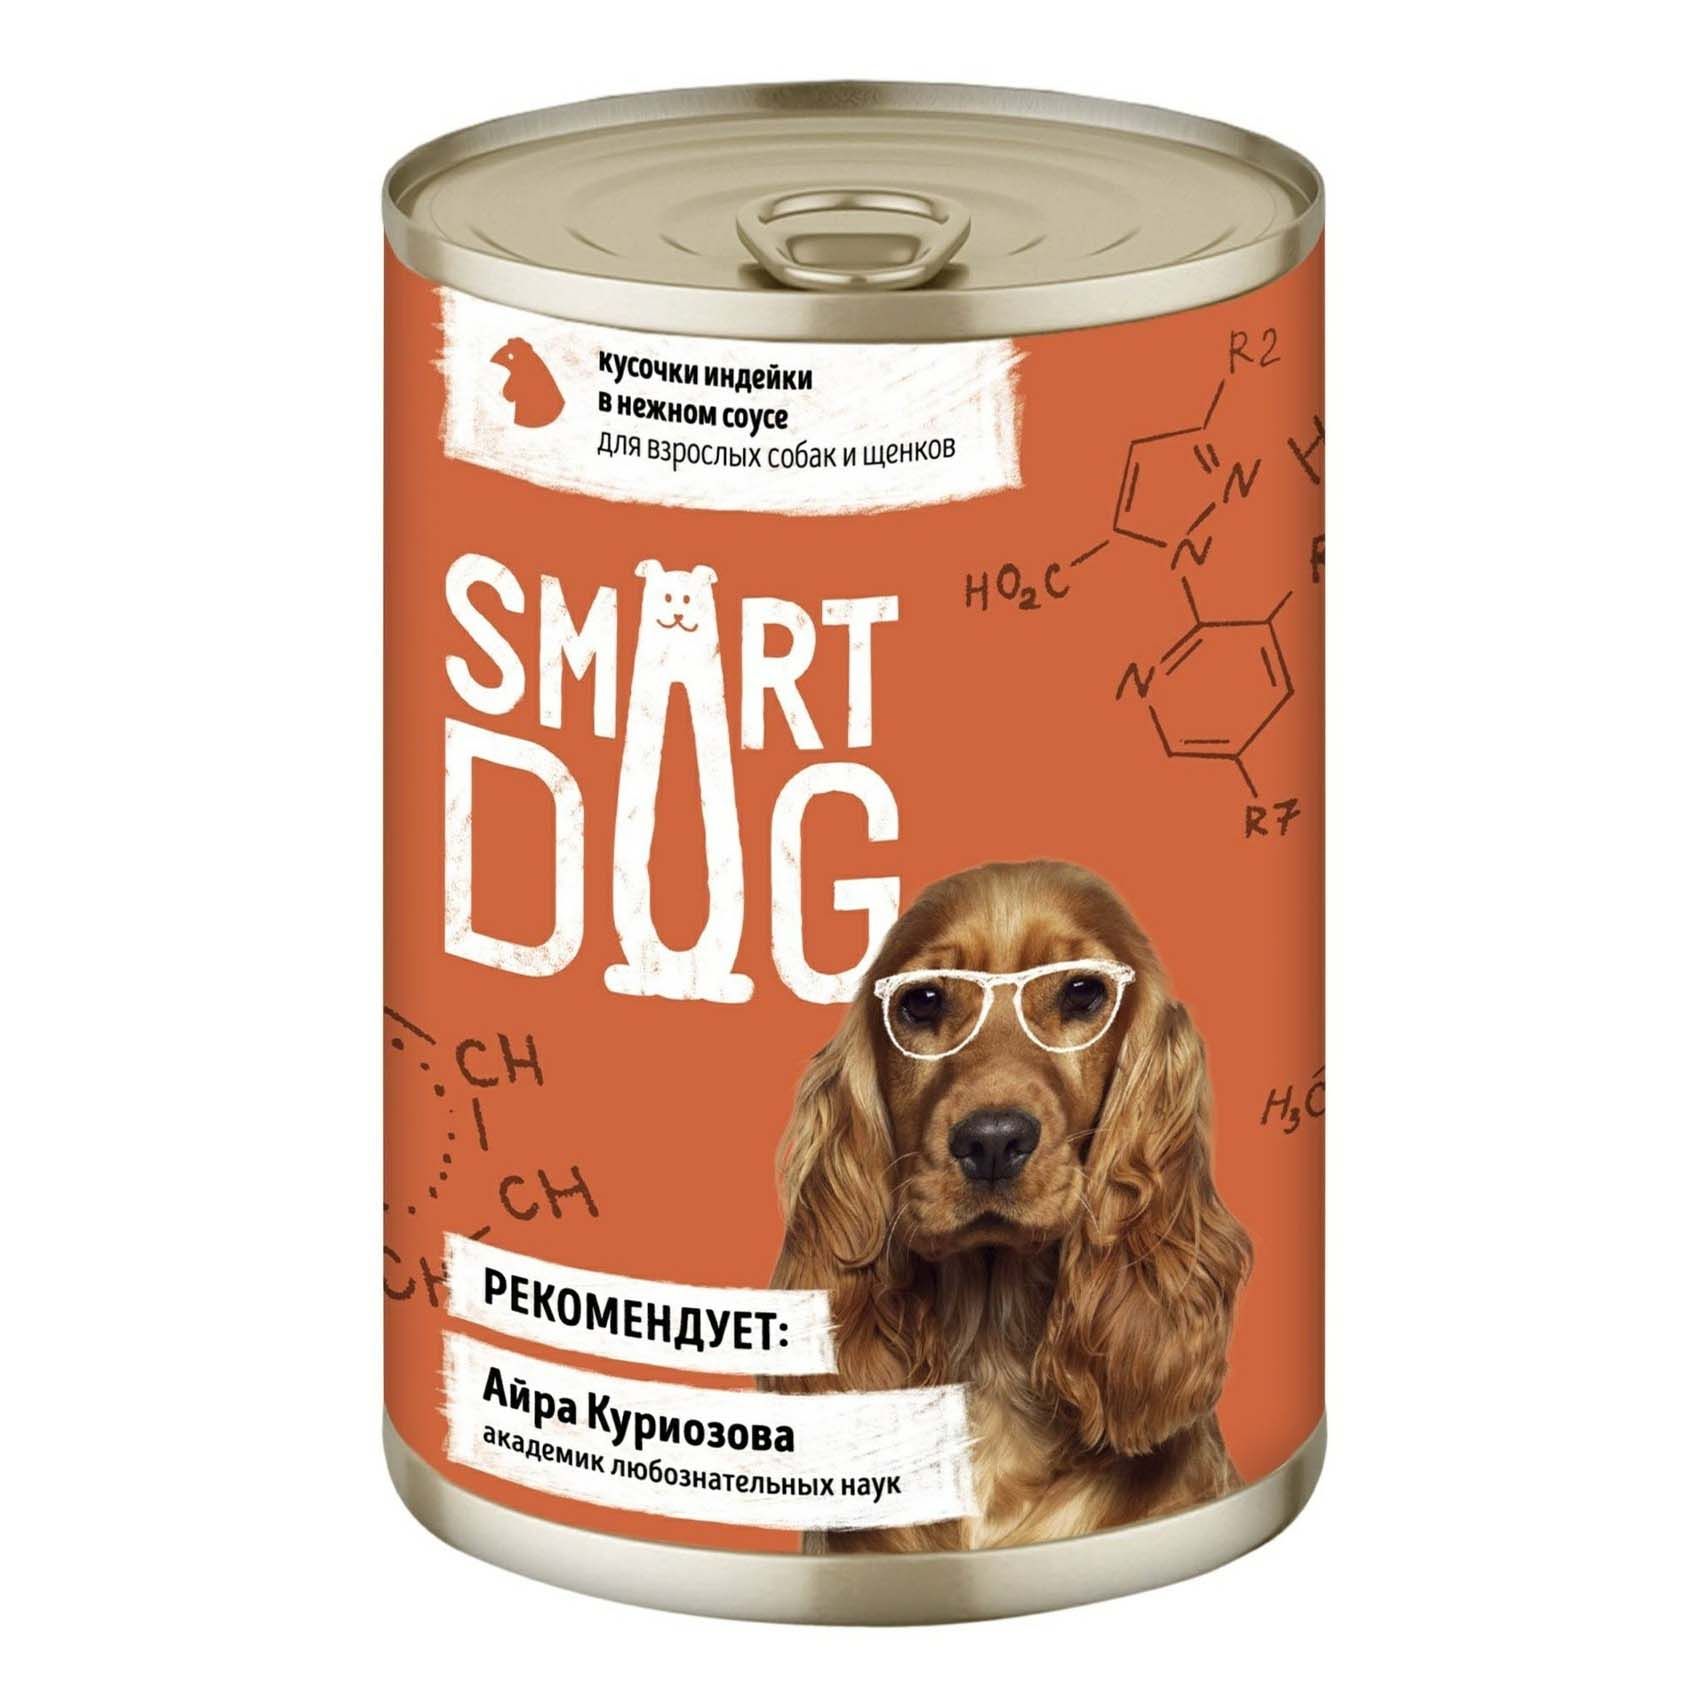 Влажный корм Smart Dog кусочки индейки в нежном соусе для взрослых собак и щенков 850 г